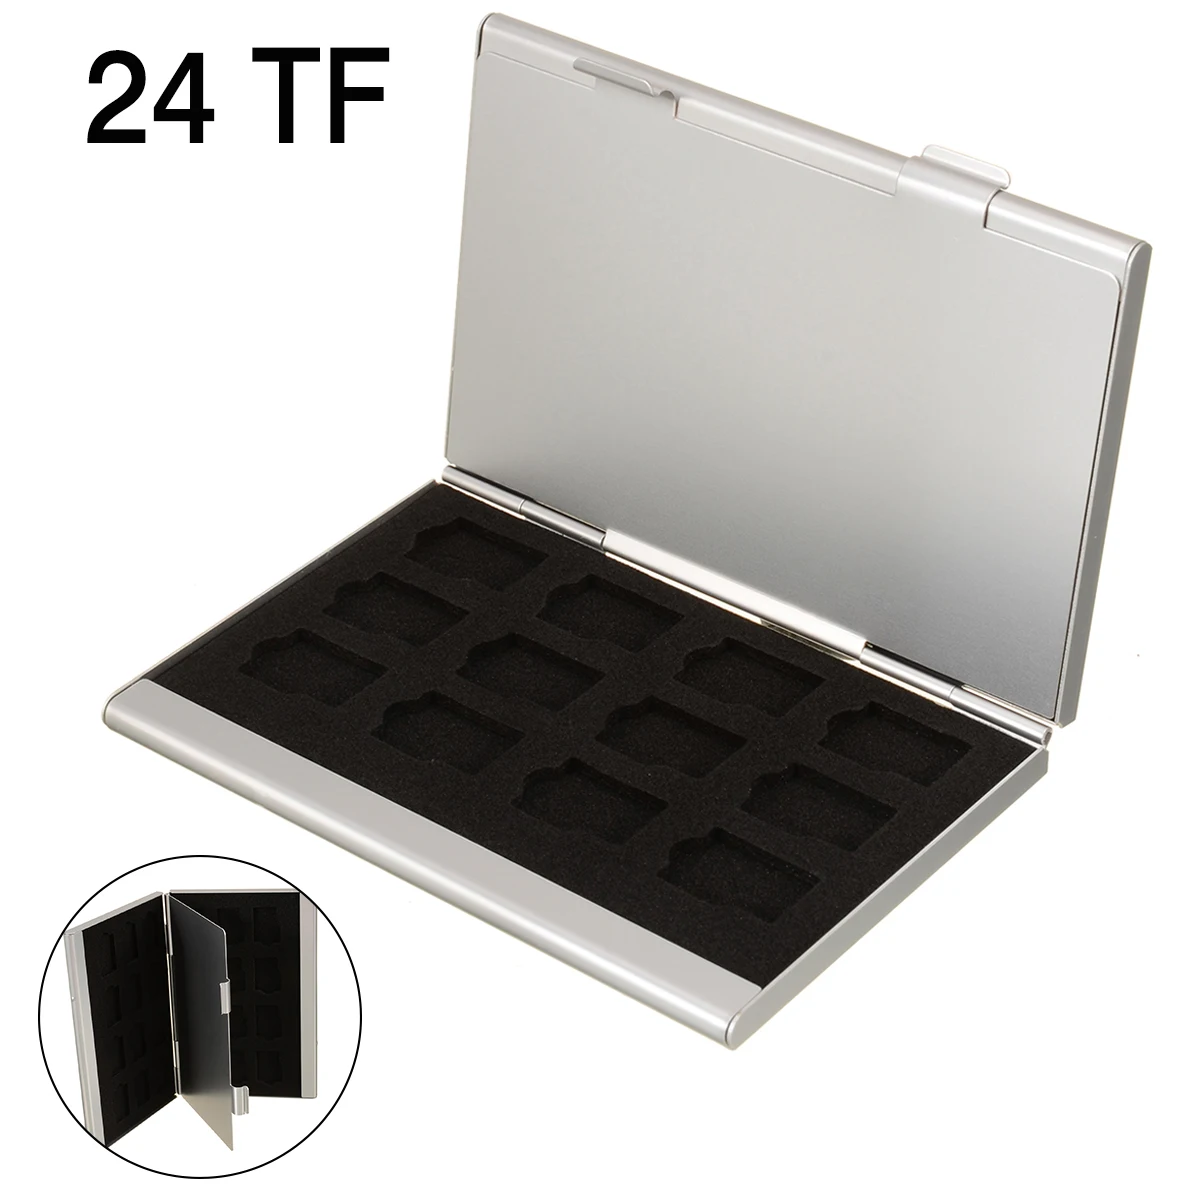 24 В 1 Портативная Алюминиевая коробка для хранения карт TF для карт памяти, чехлы для хранения, держатель, защита, универсальные удобные инструменты для переноски